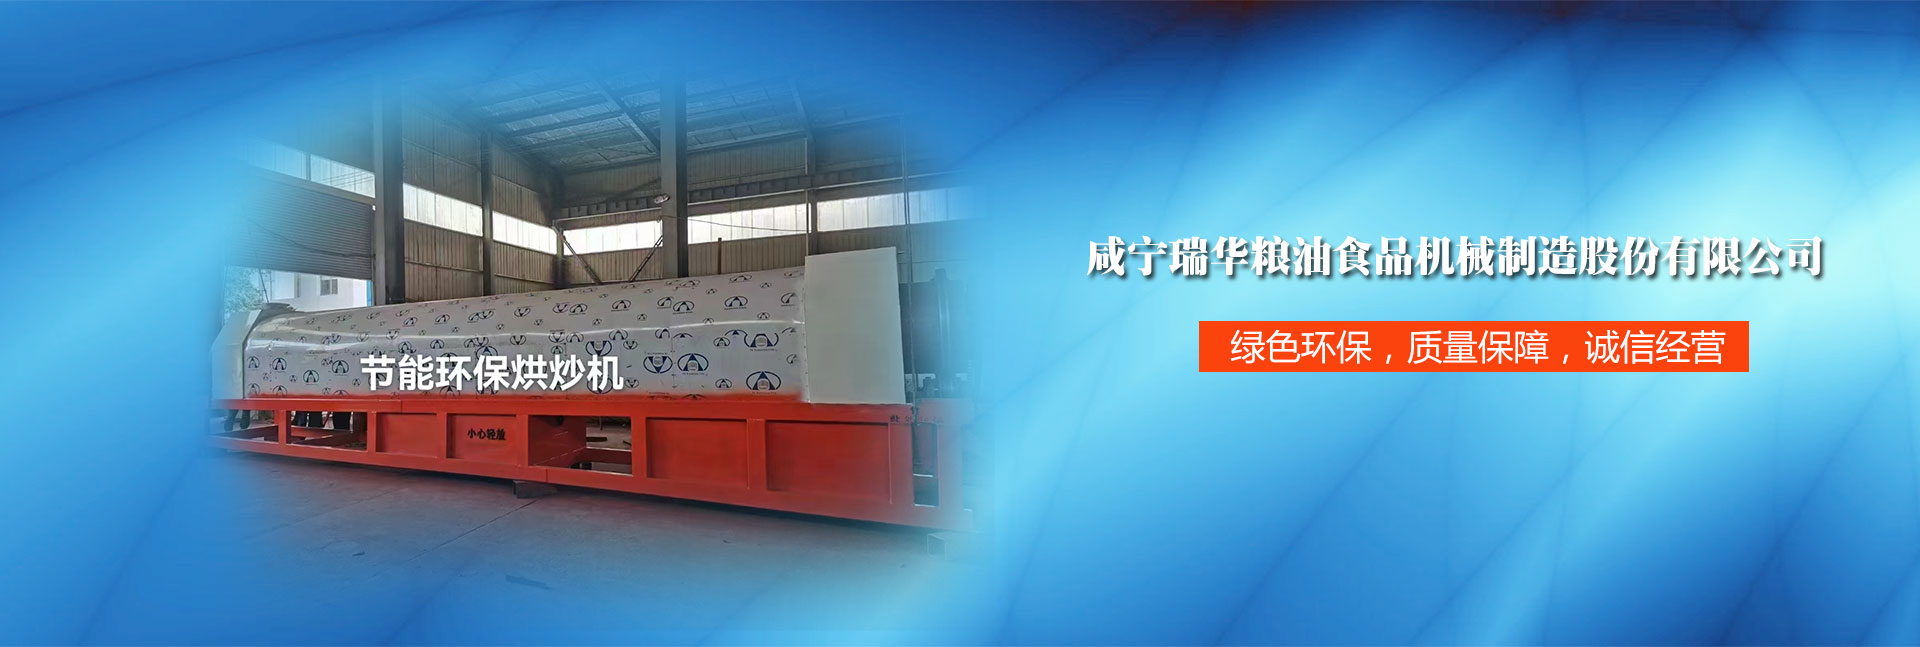 咸寧市瑞華糧油食品機械制造股份有限公司